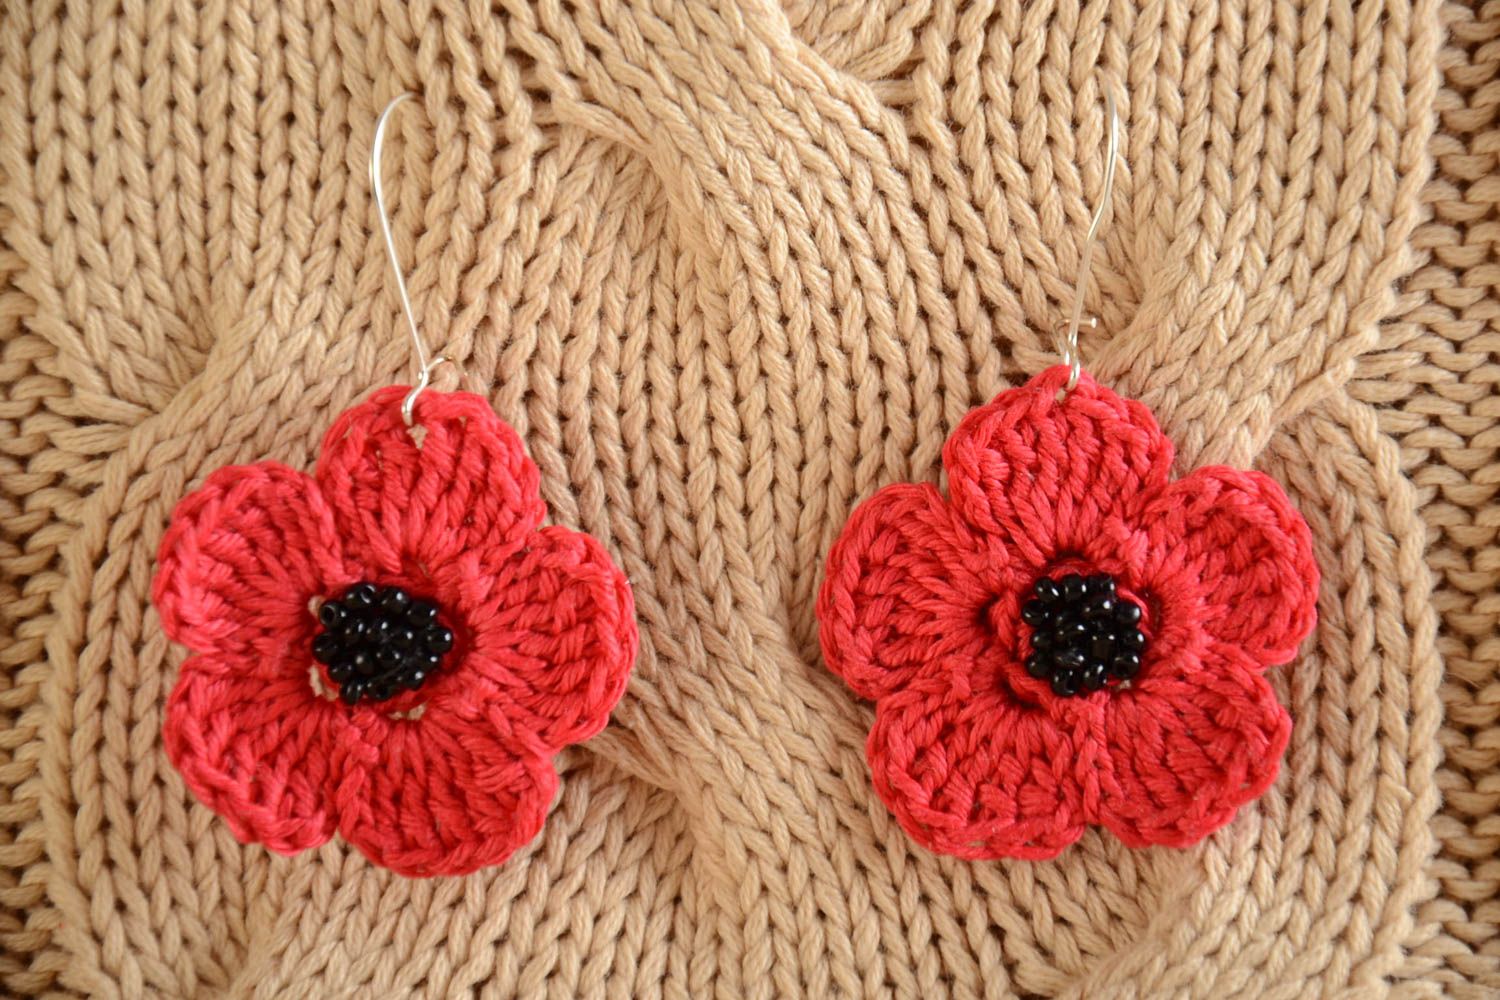 Handmade crochet poppy earrings